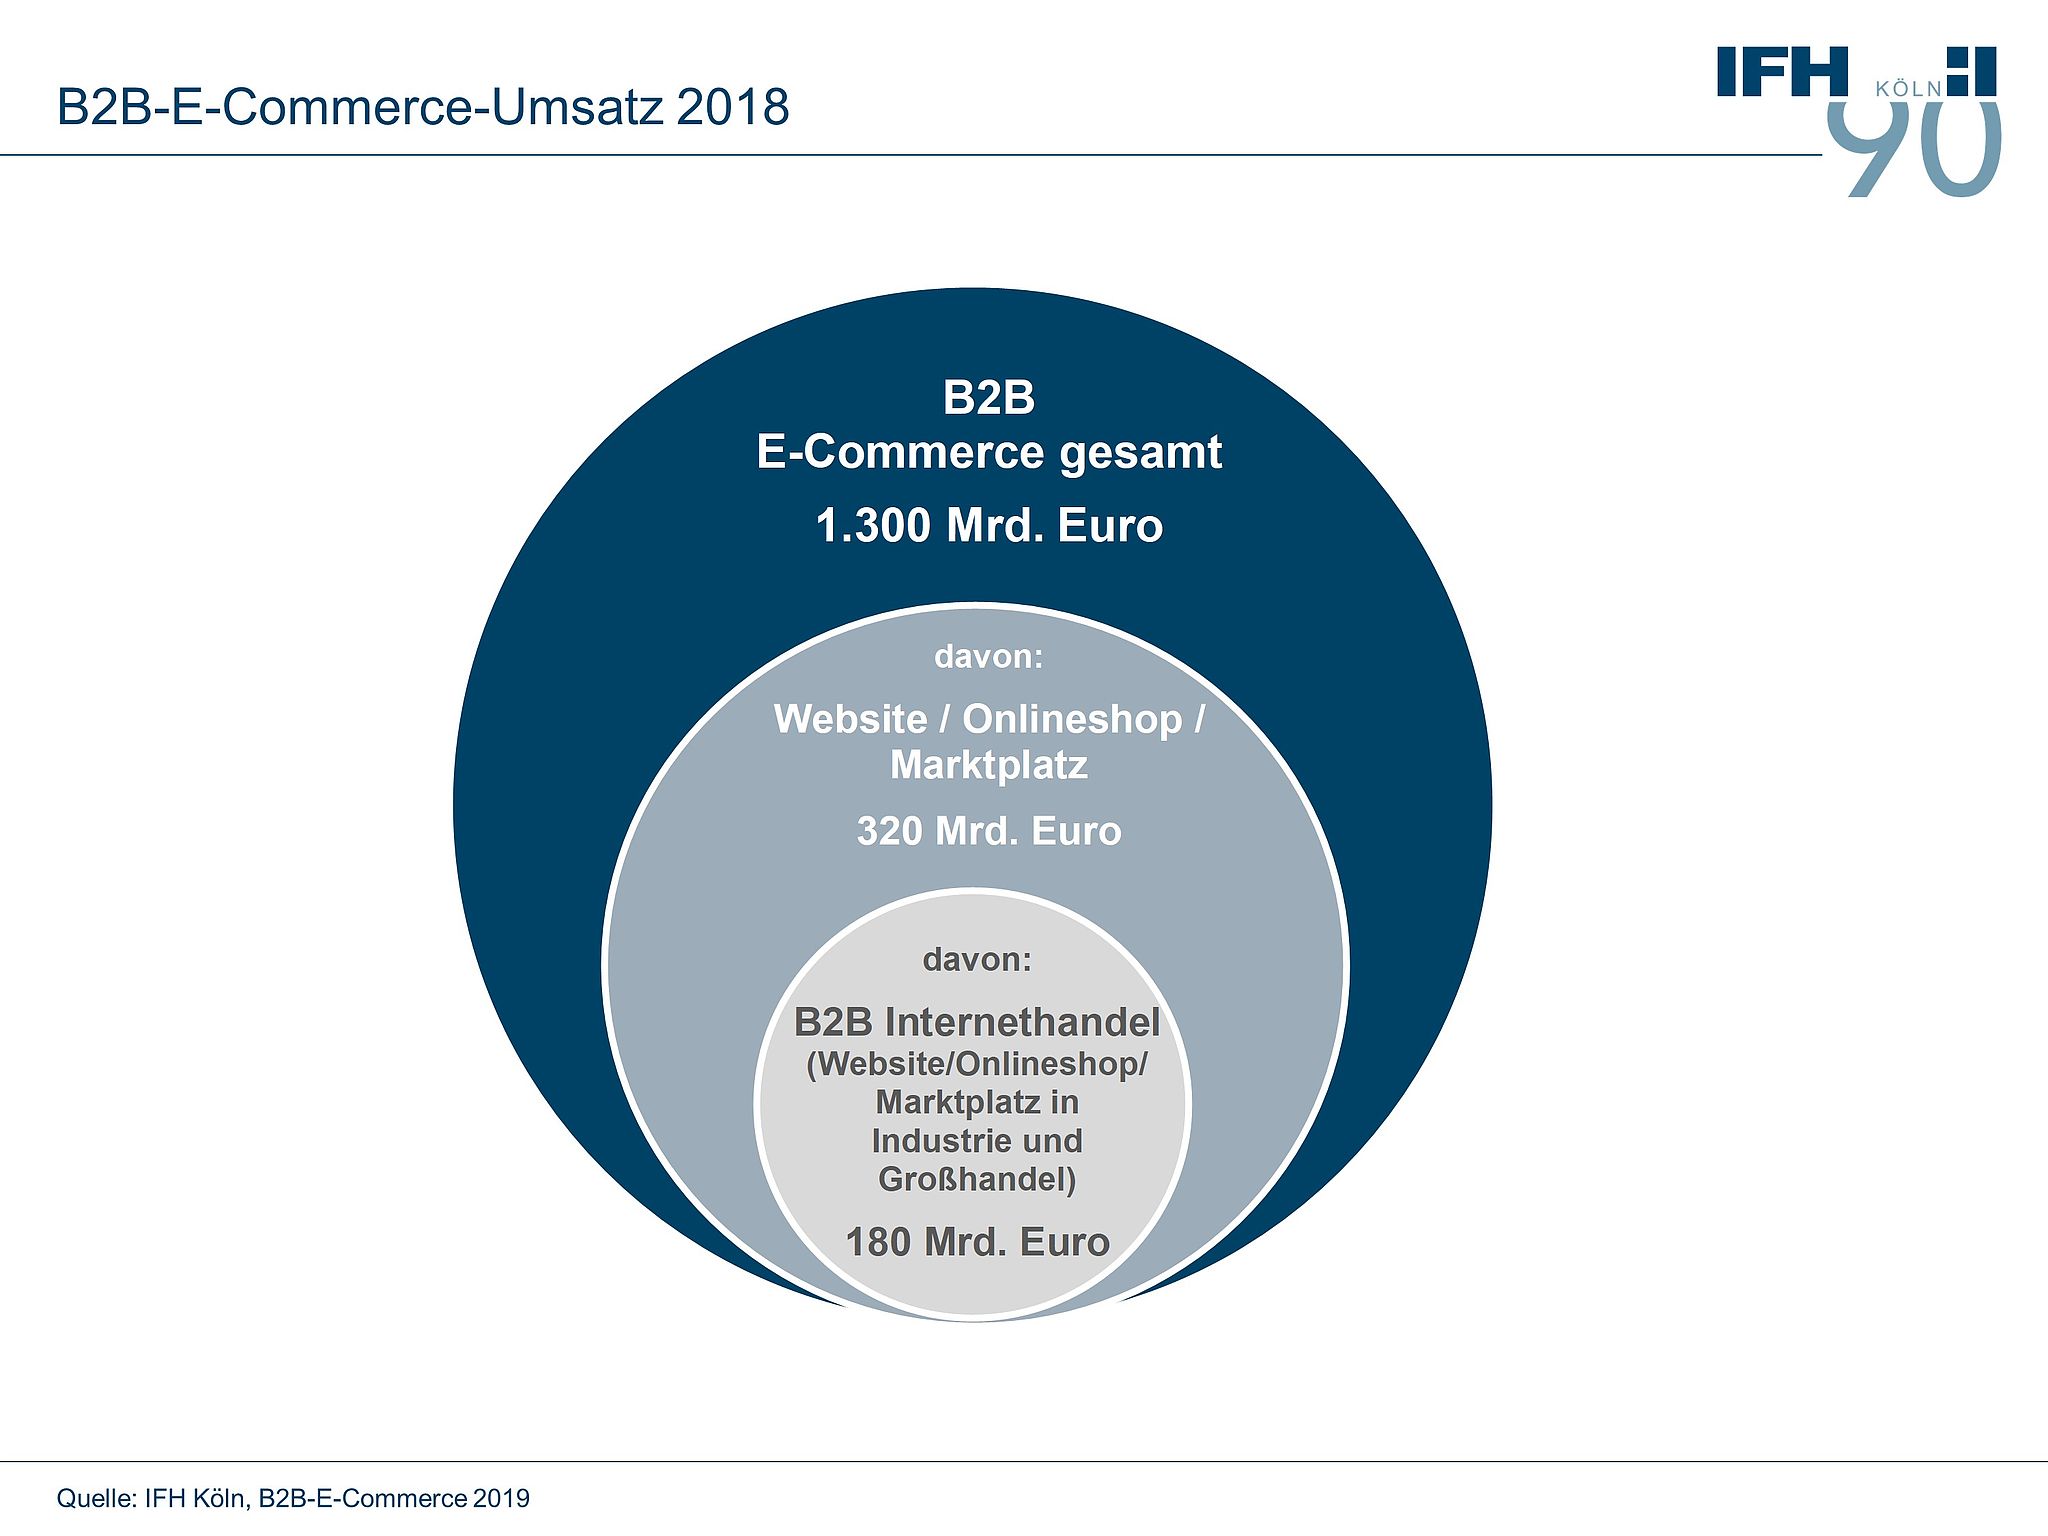 B2B-E-Commerce-Umsatz 2018